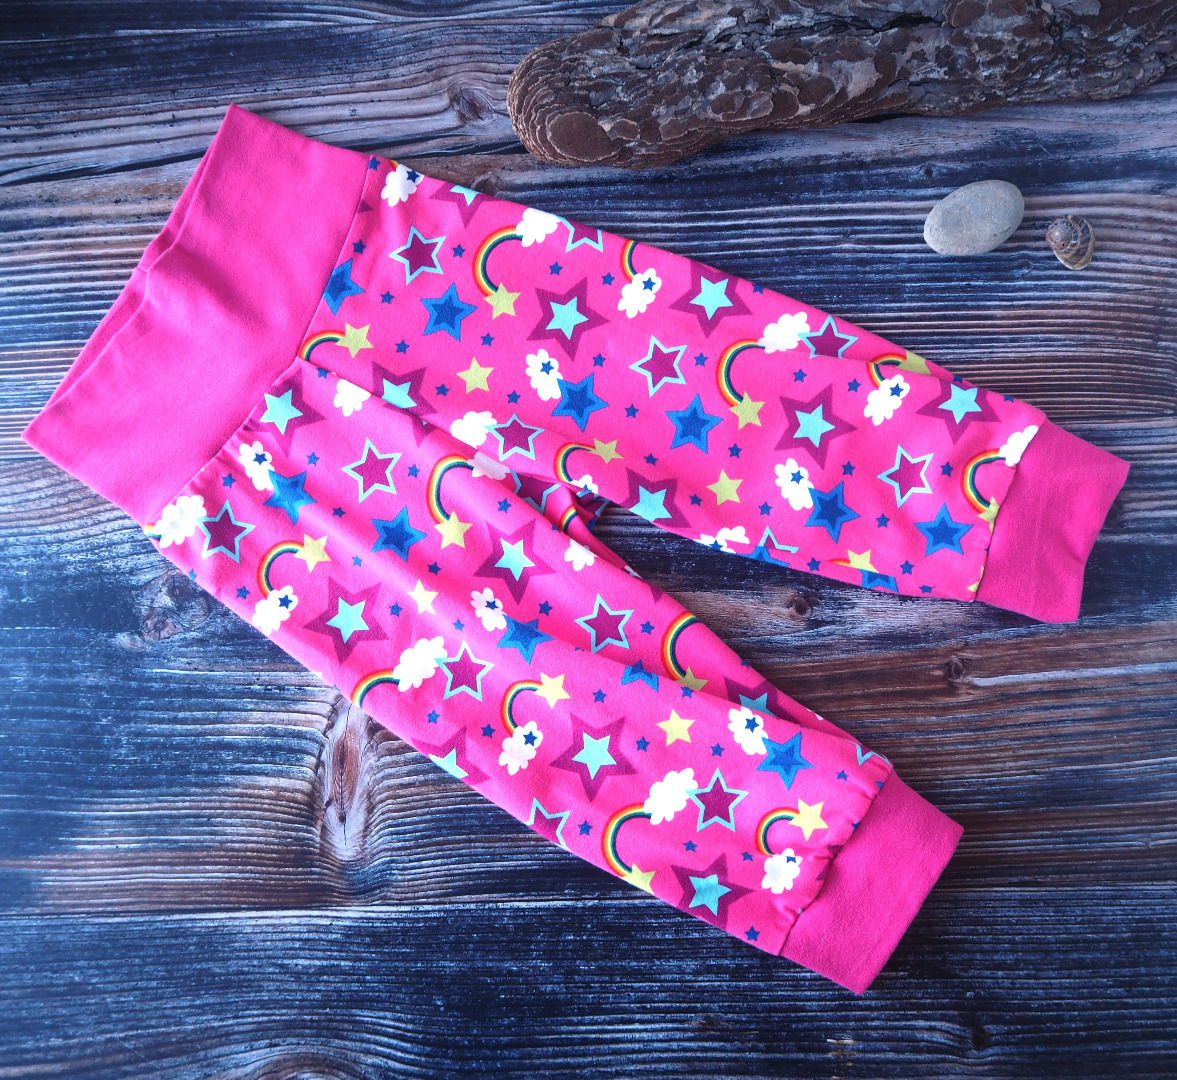 Pumphose 3/4 Länge für Kinder kurze Pumphose für kleine Mädchen in pink gemustert mit Regenbögen und Sternen Größe 110 - 116 2